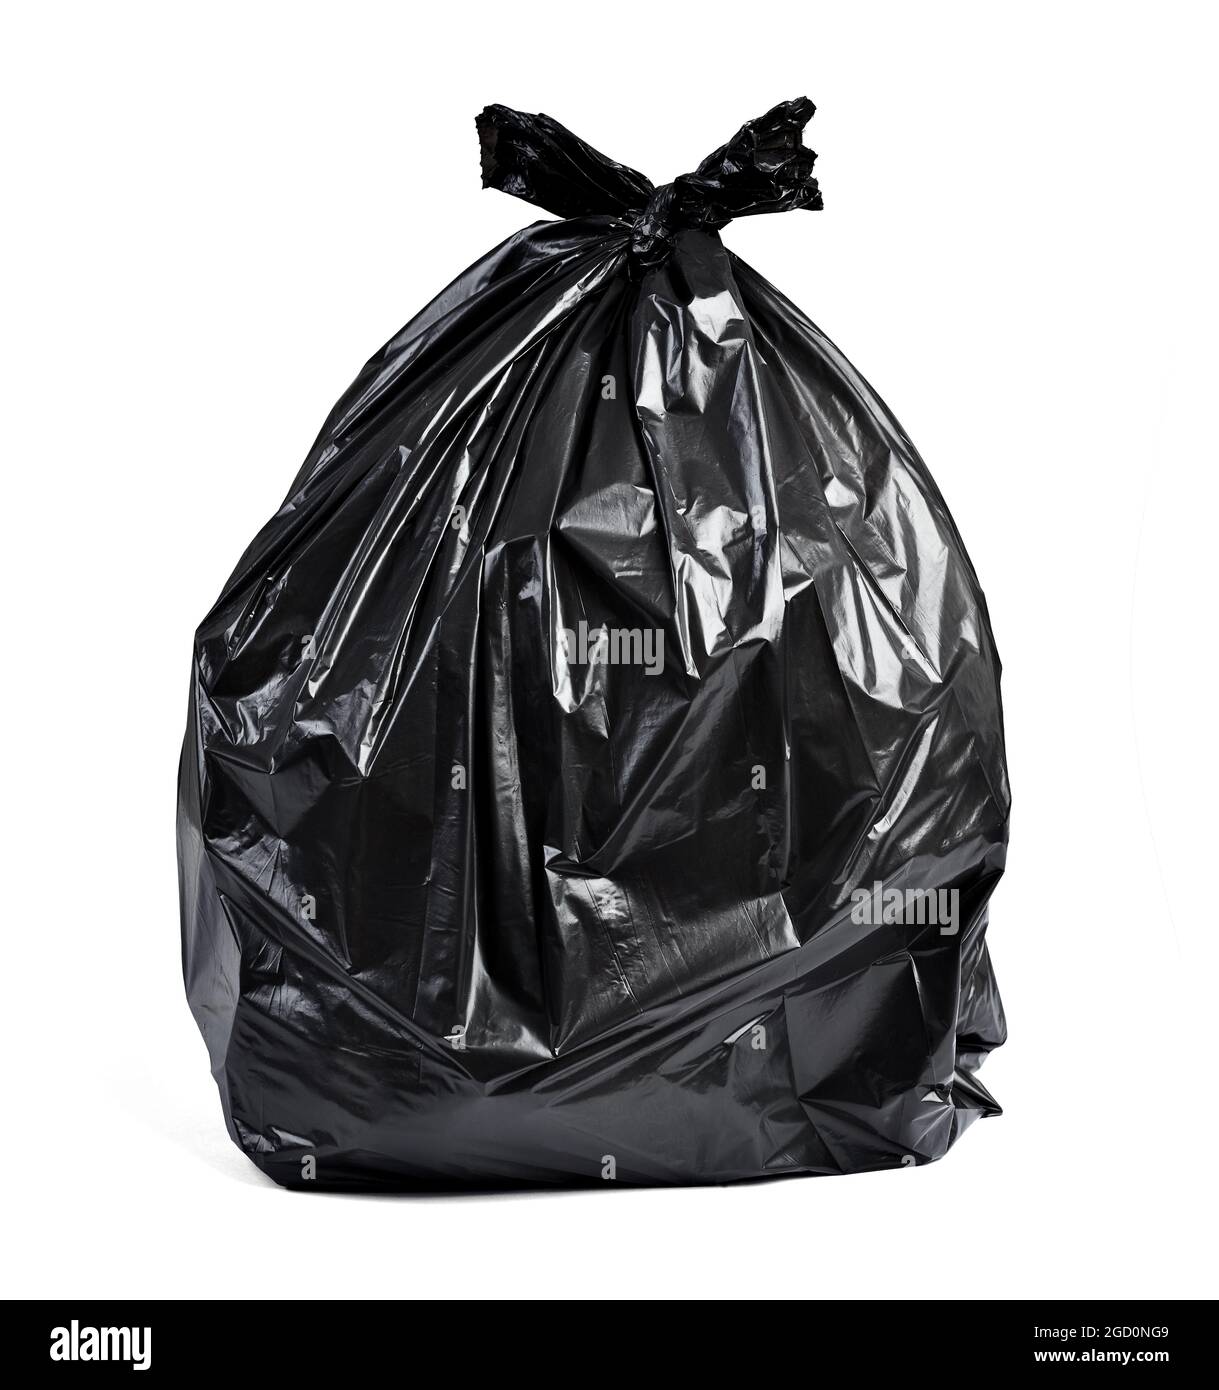 sac en plastique poubelle déchets environnement pollution déchets déchets vidage recyclage écologie bac noir jetable plein Banque D'Images